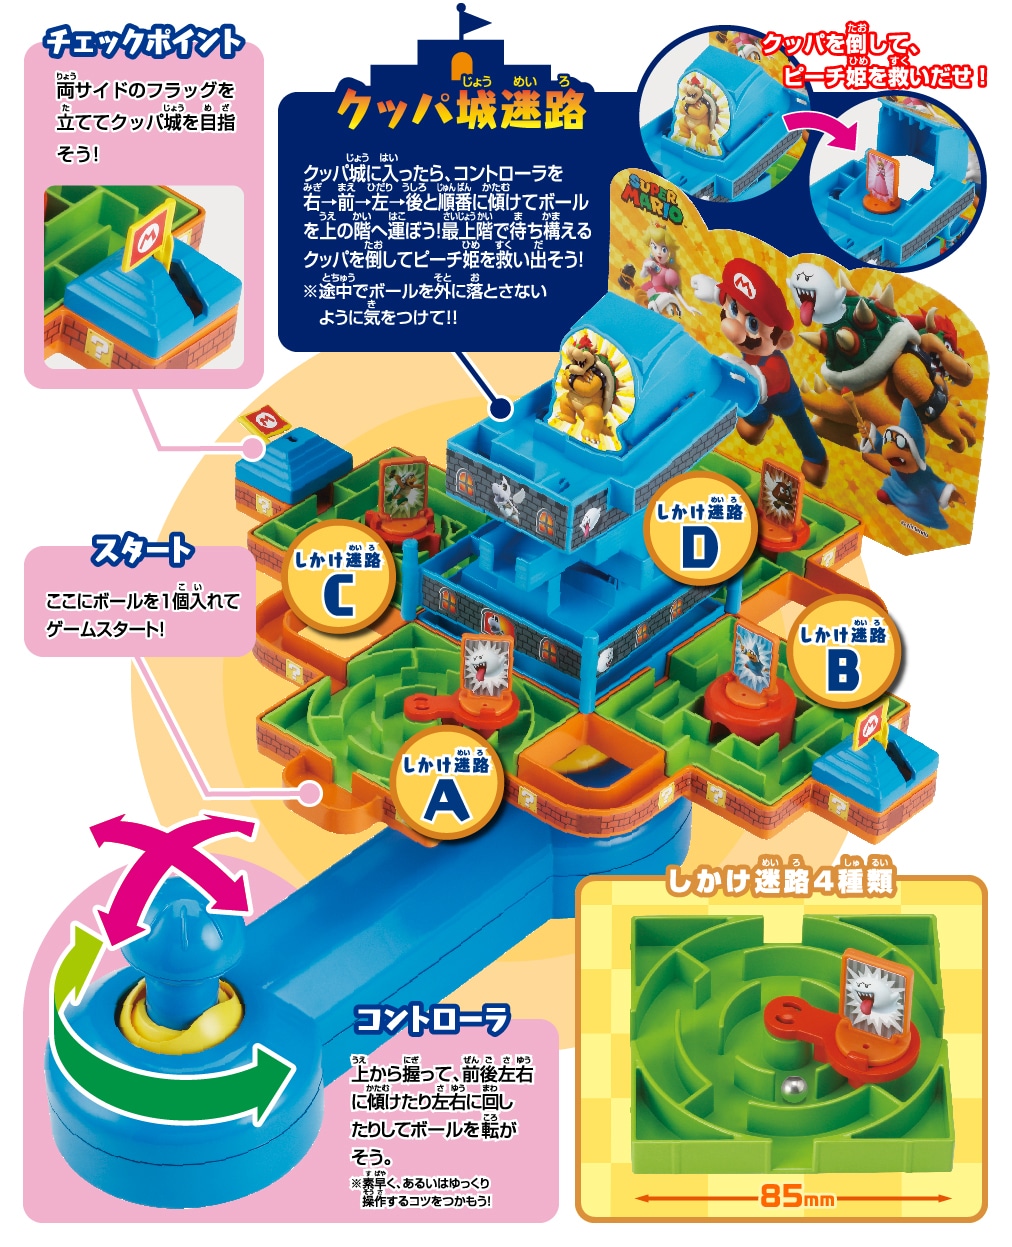 スーパーマリオ 大迷路ゲームdx ピーチ姫と5つの迷宮 エポック社公式サイト